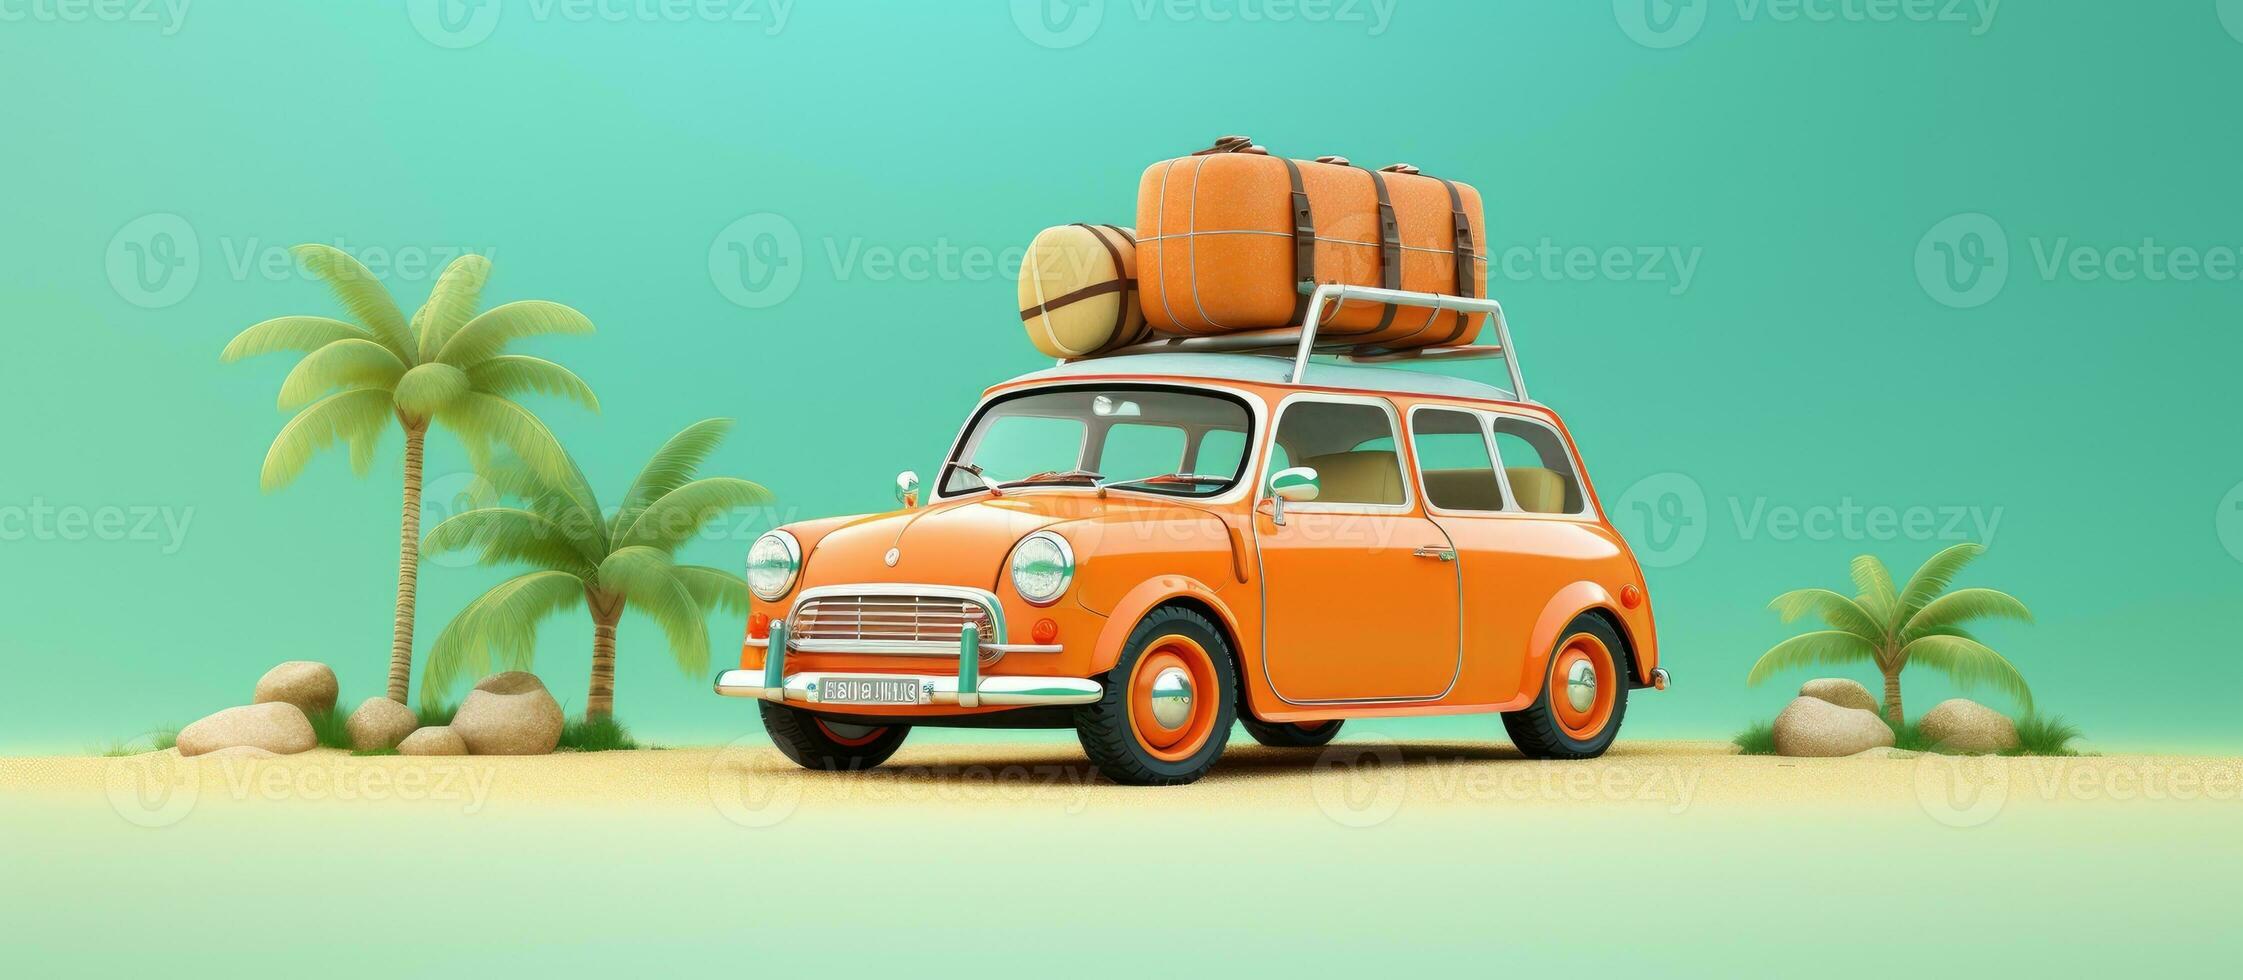 3d illustration av en retro bil med en sommar semester tillbehör på en grön bakgrund foto